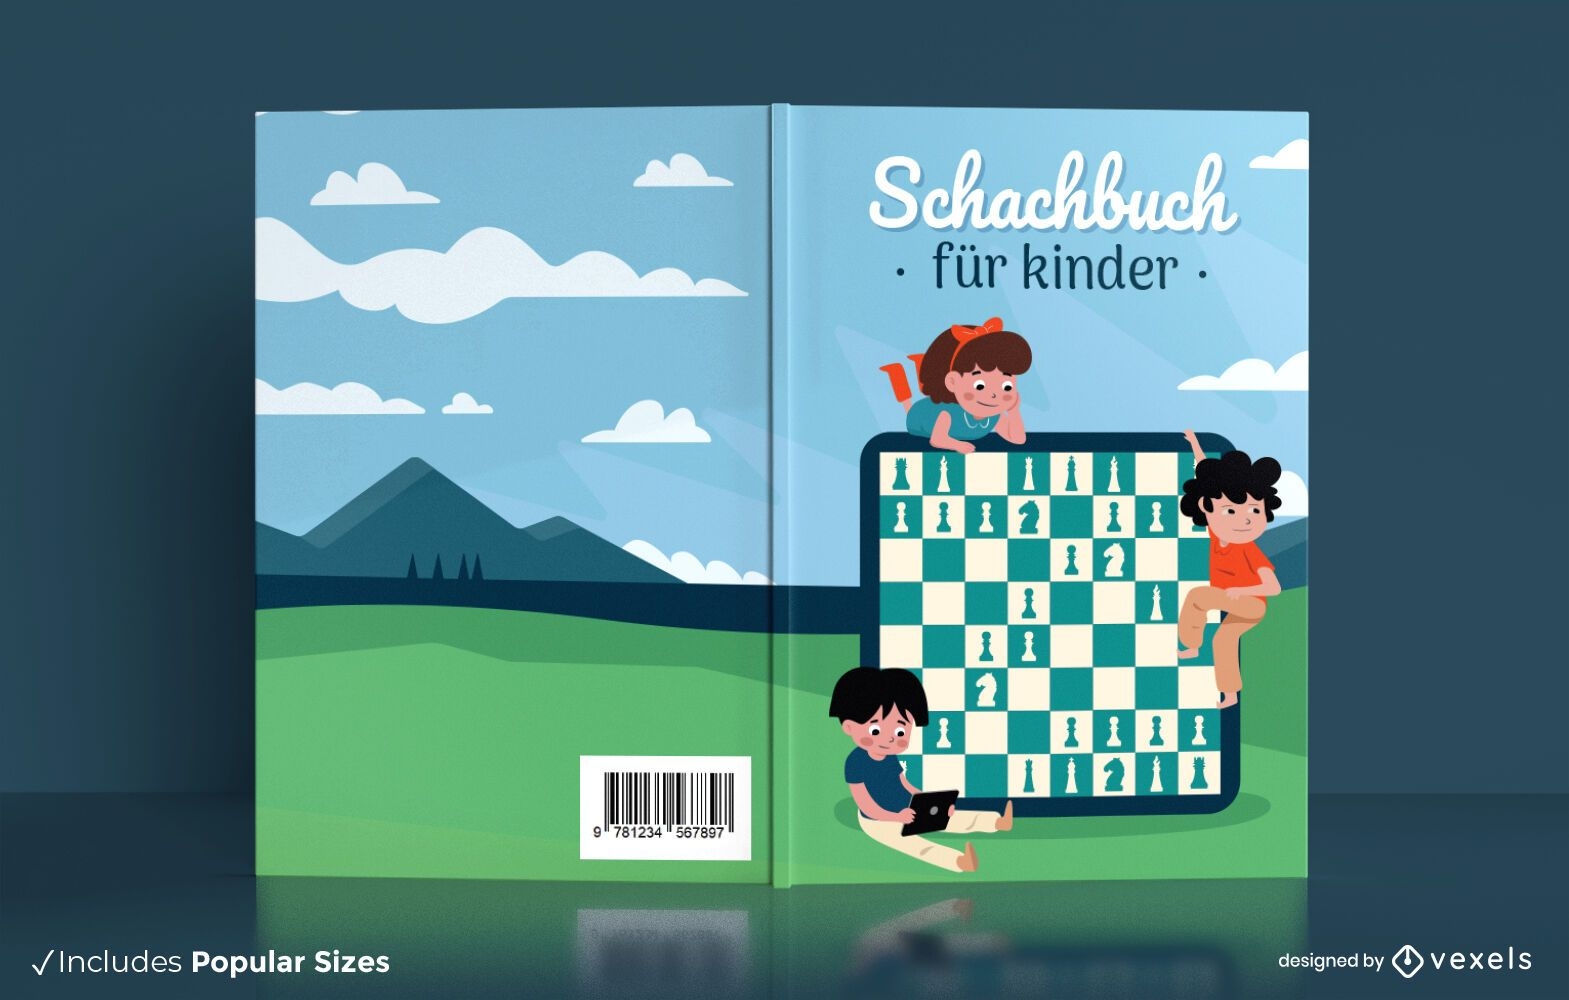 Kinderschachbuch deutsches Cover Design